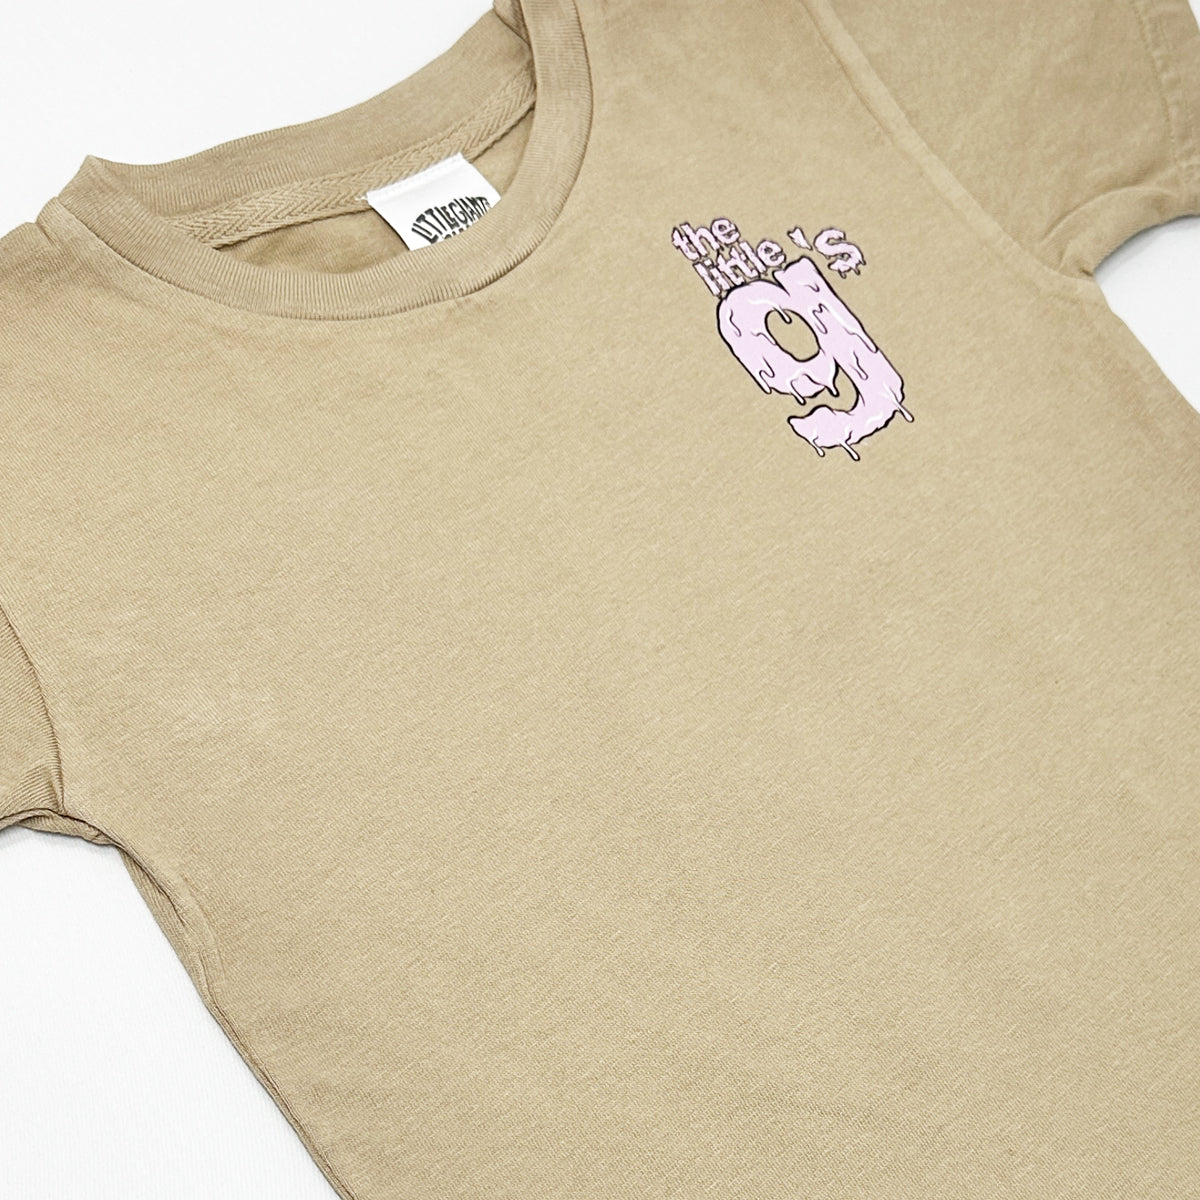 Little g's Pink Slime T-shirt (Peanut Butter)